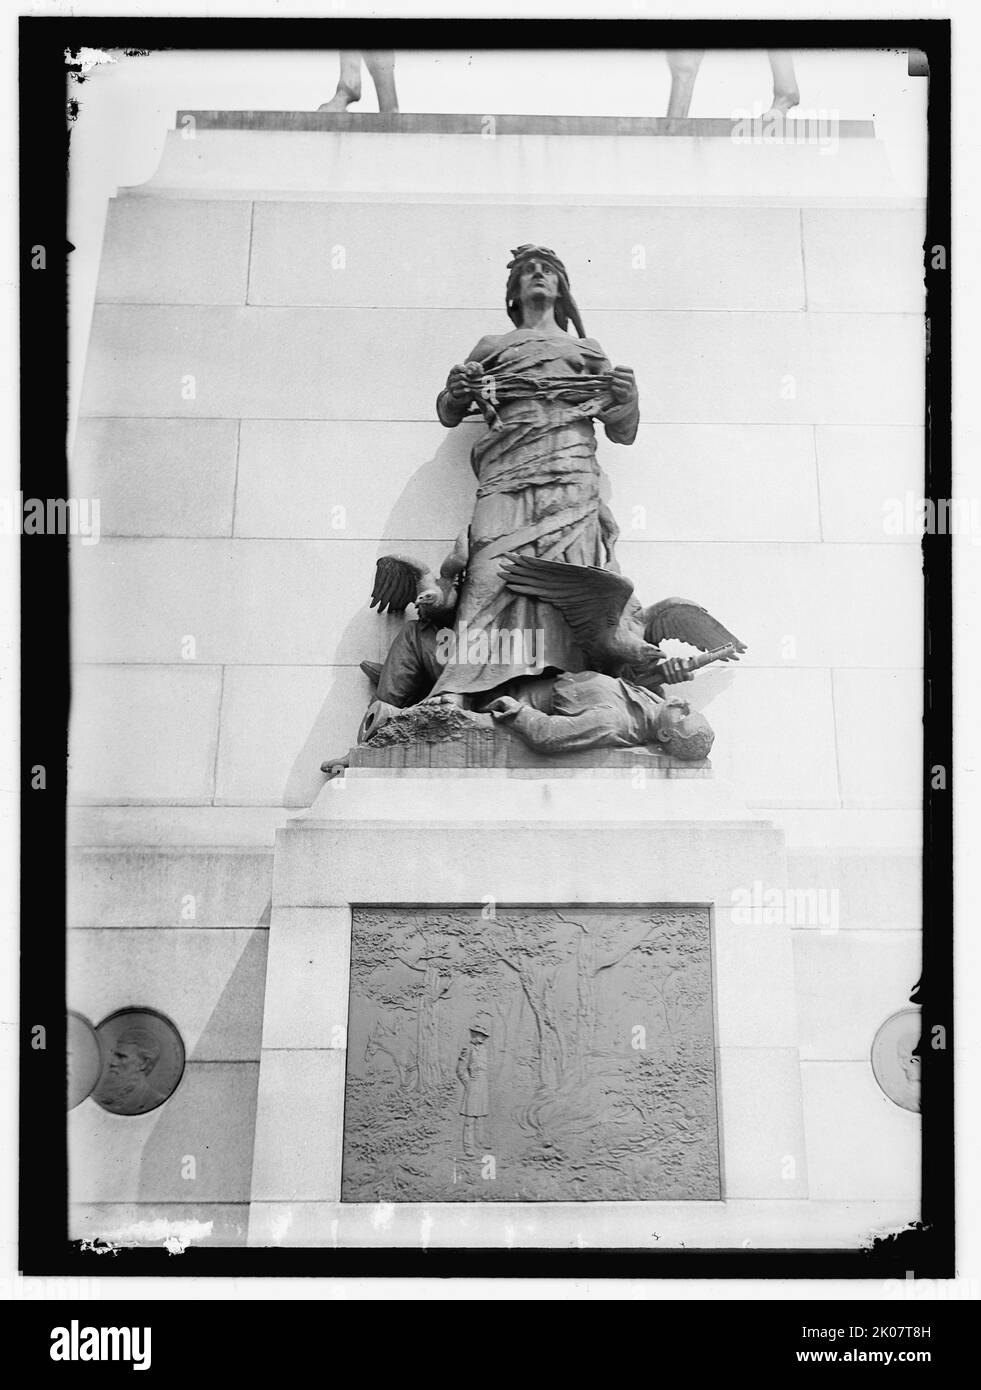 General William Tecumseh Sherman Monument, Washington, D.C., zwischen 1913 und 1917. [Detail der Basis einer Reiterstatue des amerikanischen Bürgerkriegsgenerals William Tecumseh Sherman. "War" auf der Westseite ist eine schreckliche Wut, die vor Wut und Hass brodelt und die Menschheit in Form eines toten jungen Soldaten zu ihren Füßen trampelt. Große Bronzegeier halten sich auf dem Körper fest, der kurz vor dem Festfressen steht, und fahren die berühmte Beobachtung Shermans, dass „Krieg die Hölle ist“, grafisch nach Hause.“]. Stockfoto